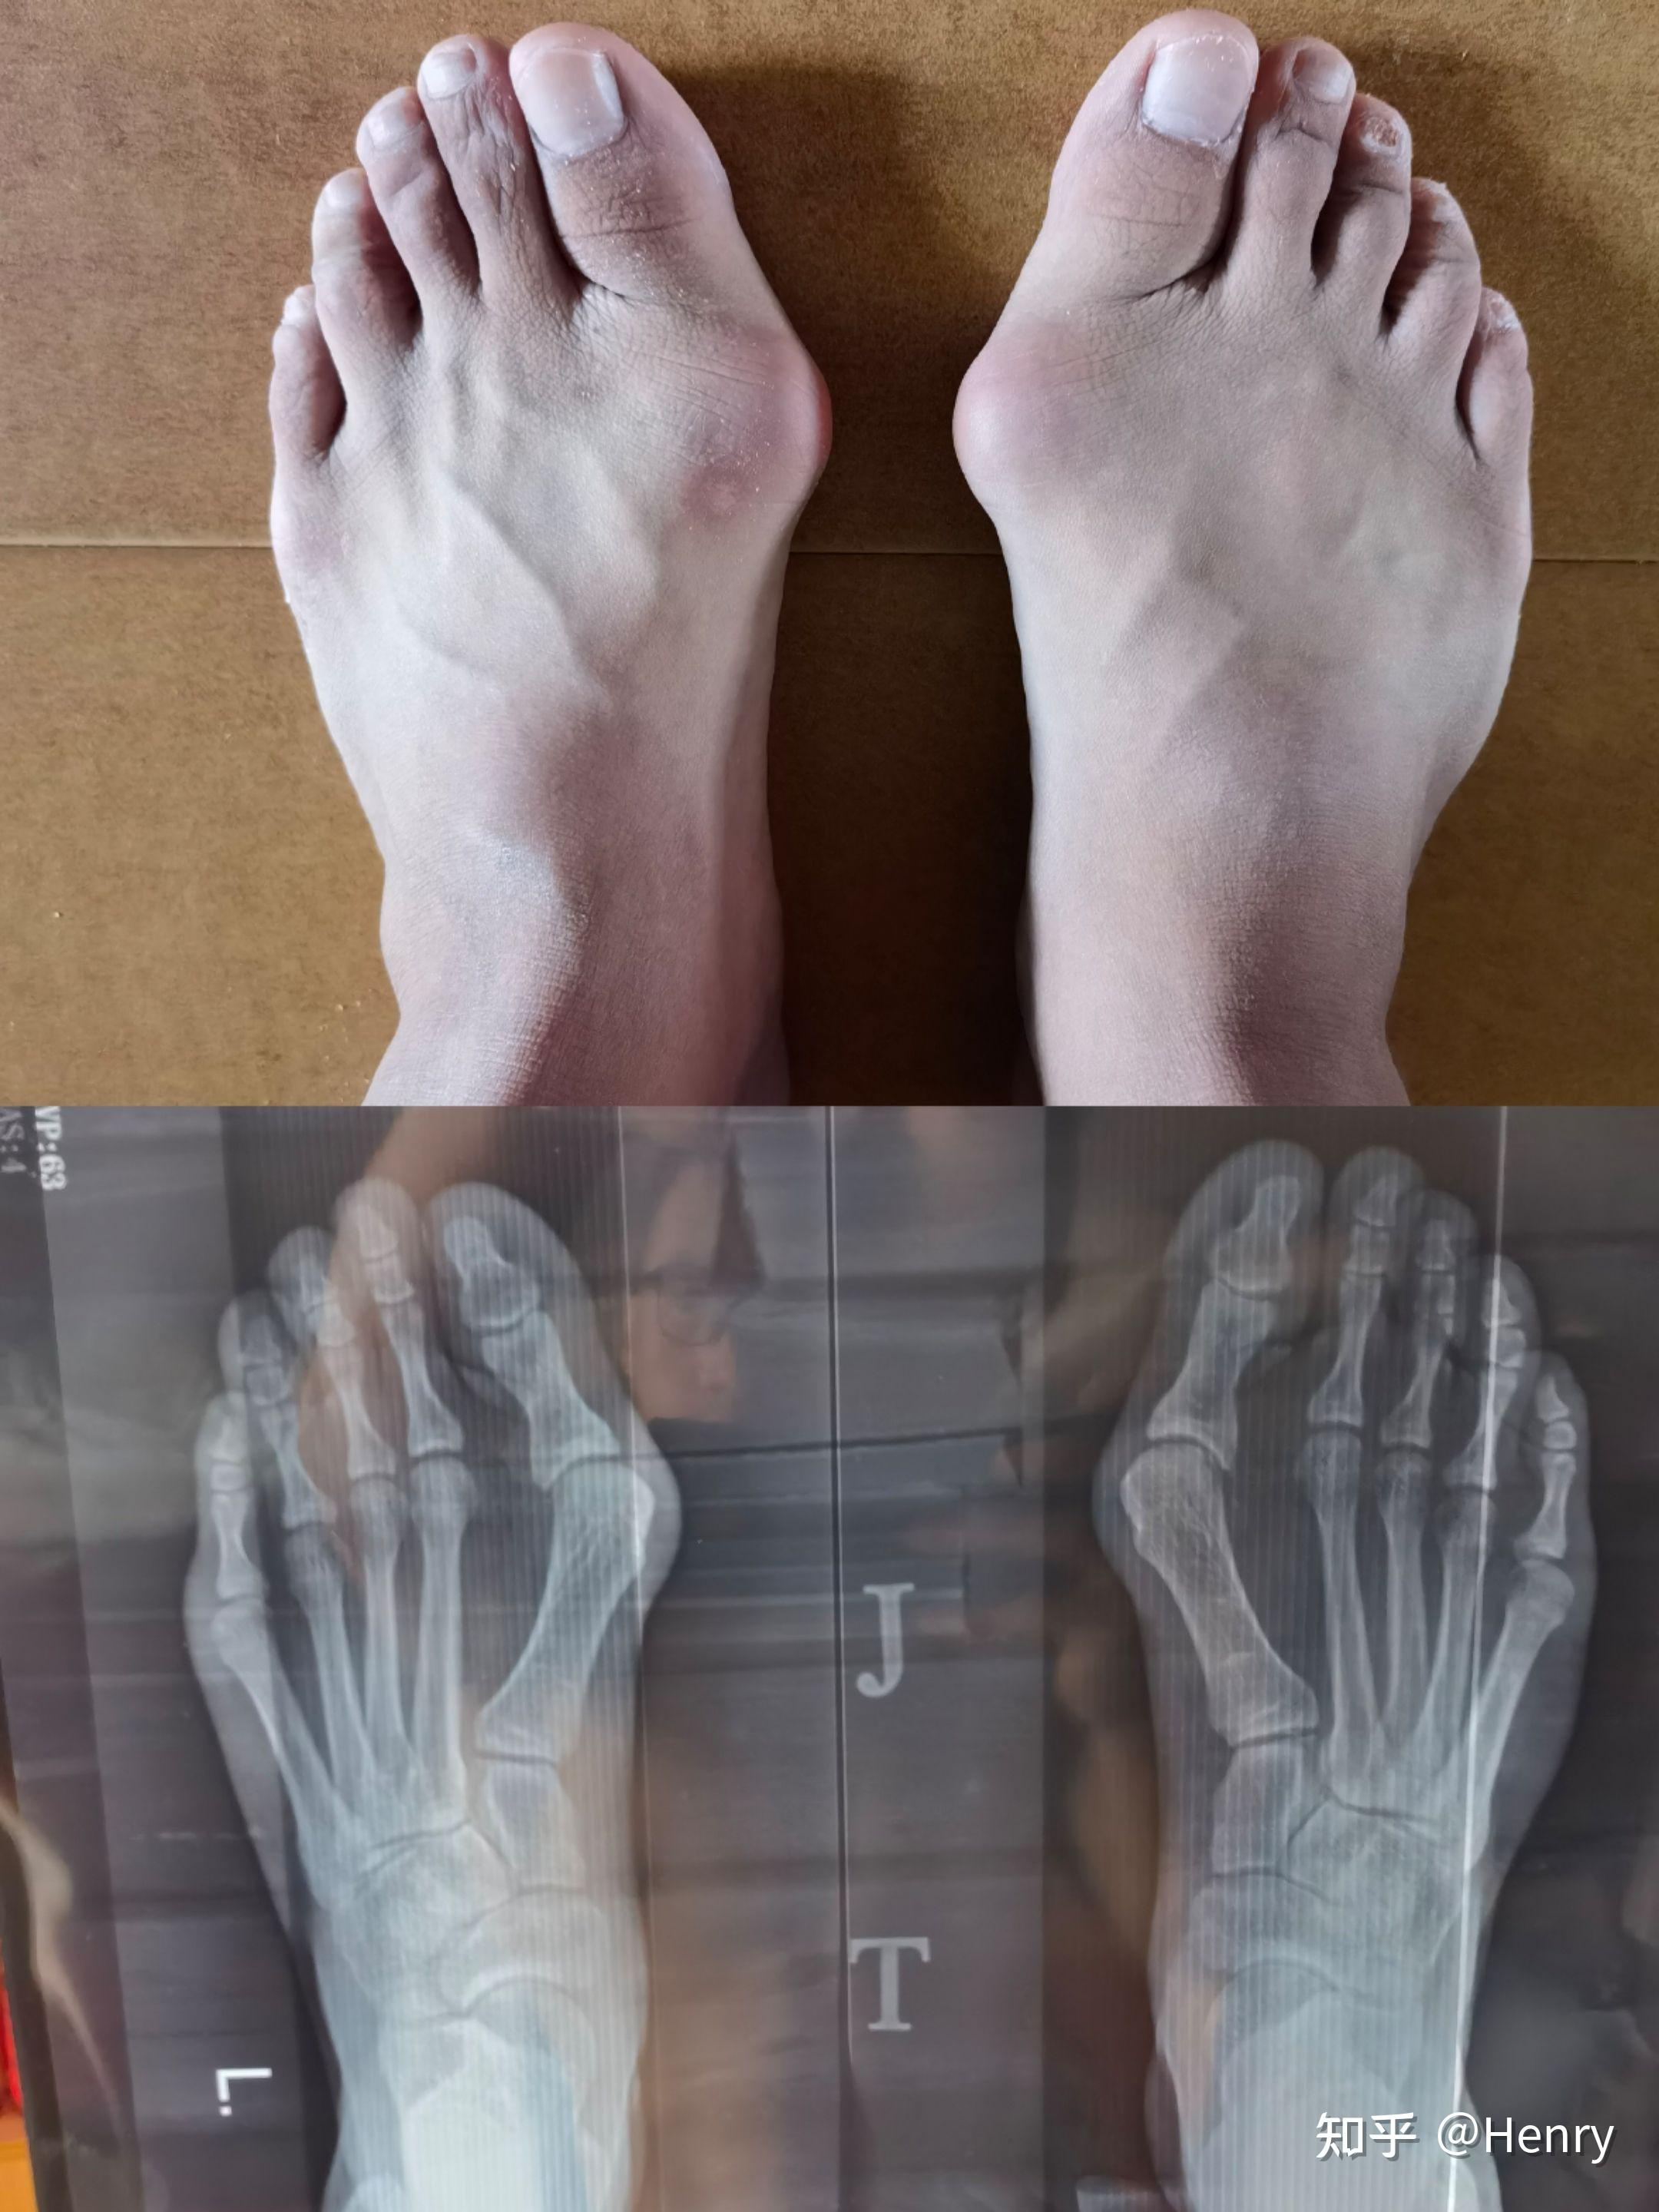 作为一个女生，脚拇指外翻是一种怎样的体验？ - 知乎